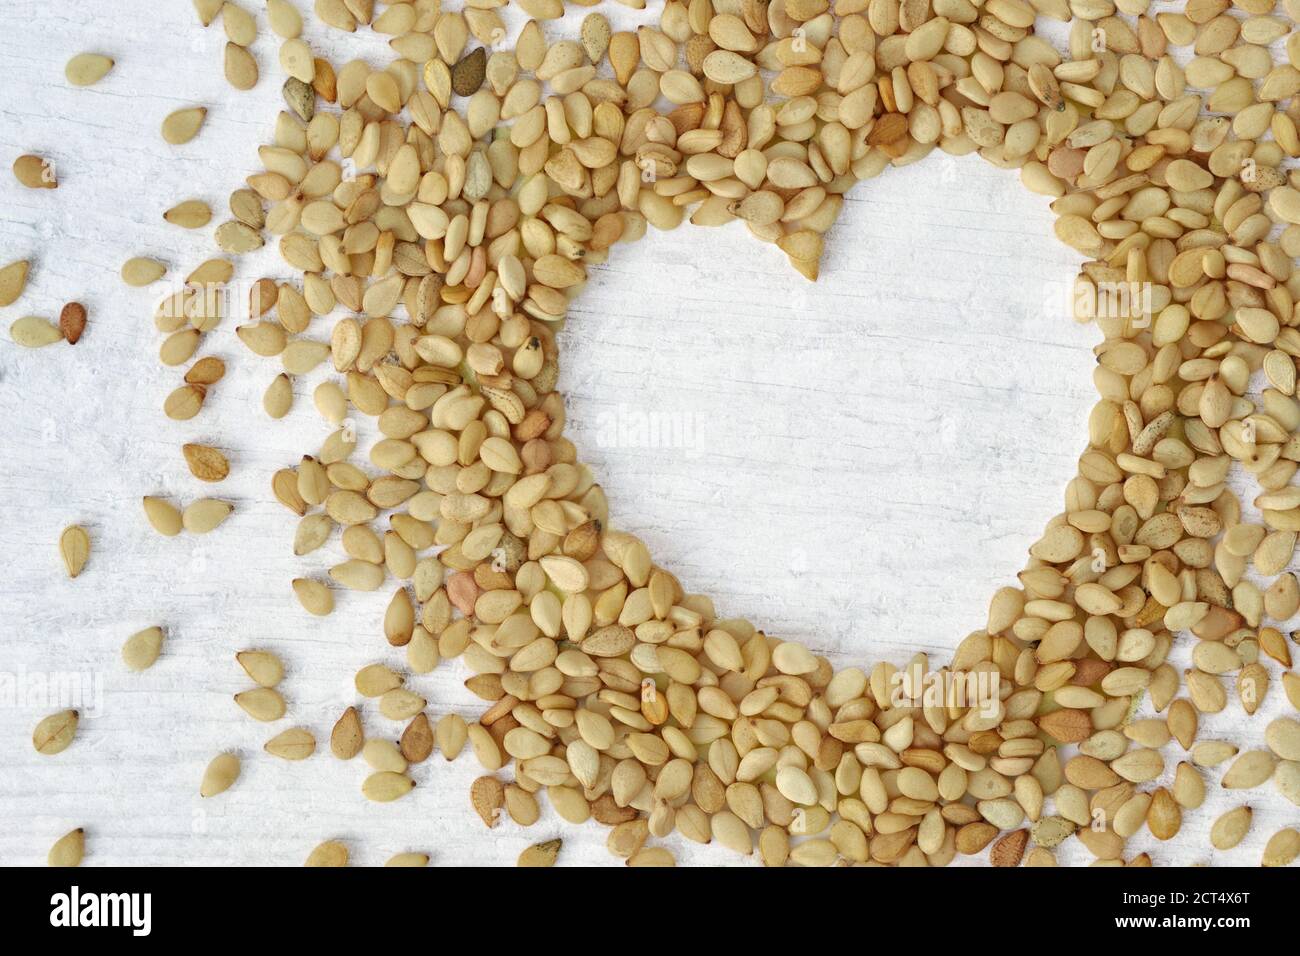 Sesamsamen in Herzform auf Holzhintergrund - Sesamsamen sind gut für Herz gesund Stockfoto